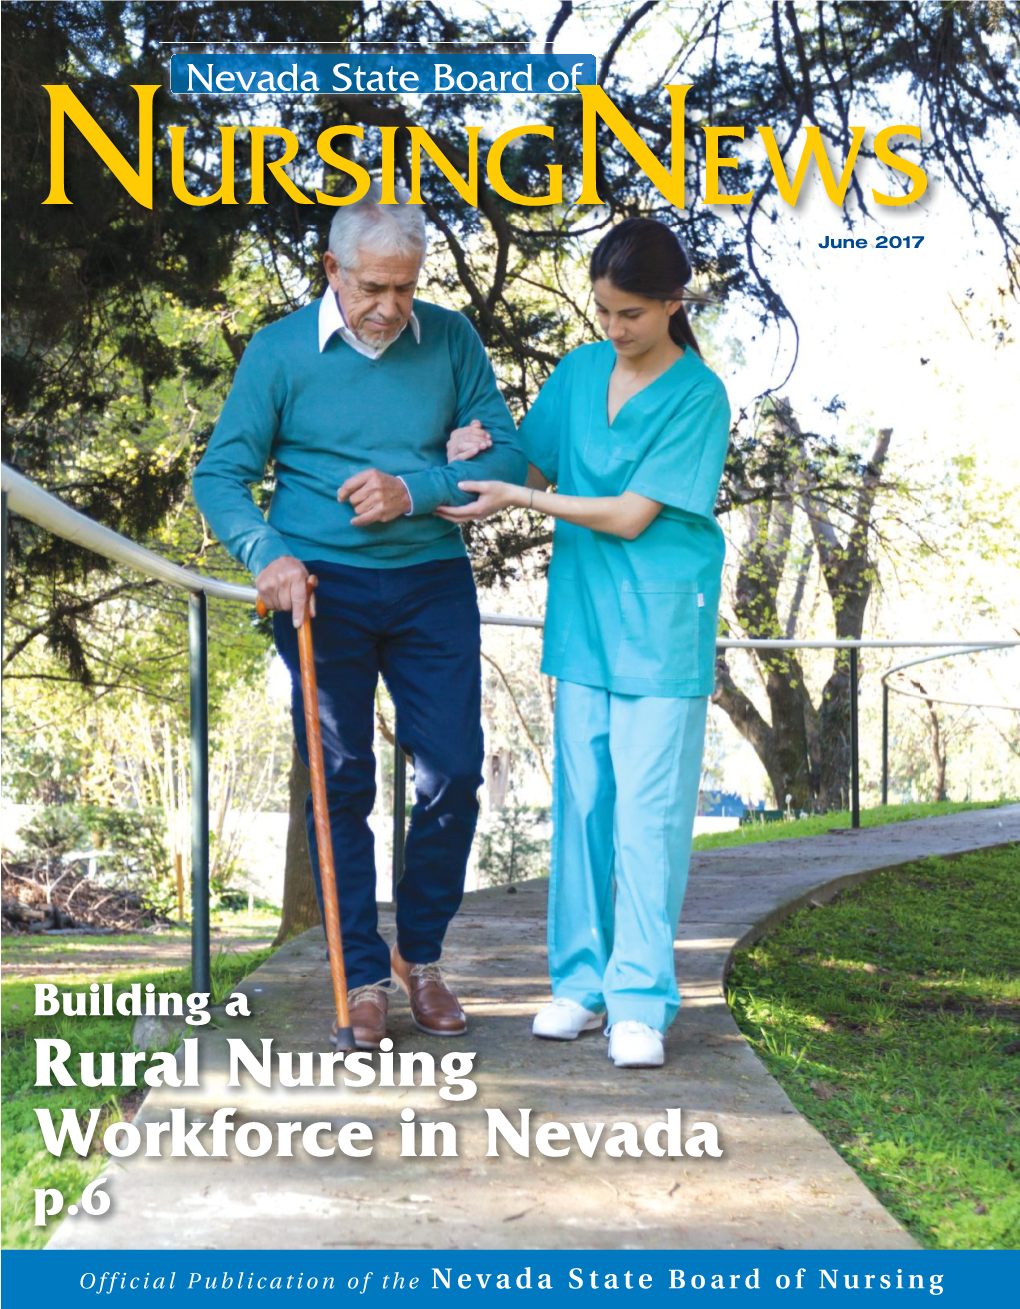 Rural Nursing Workforce in Nevada P.6